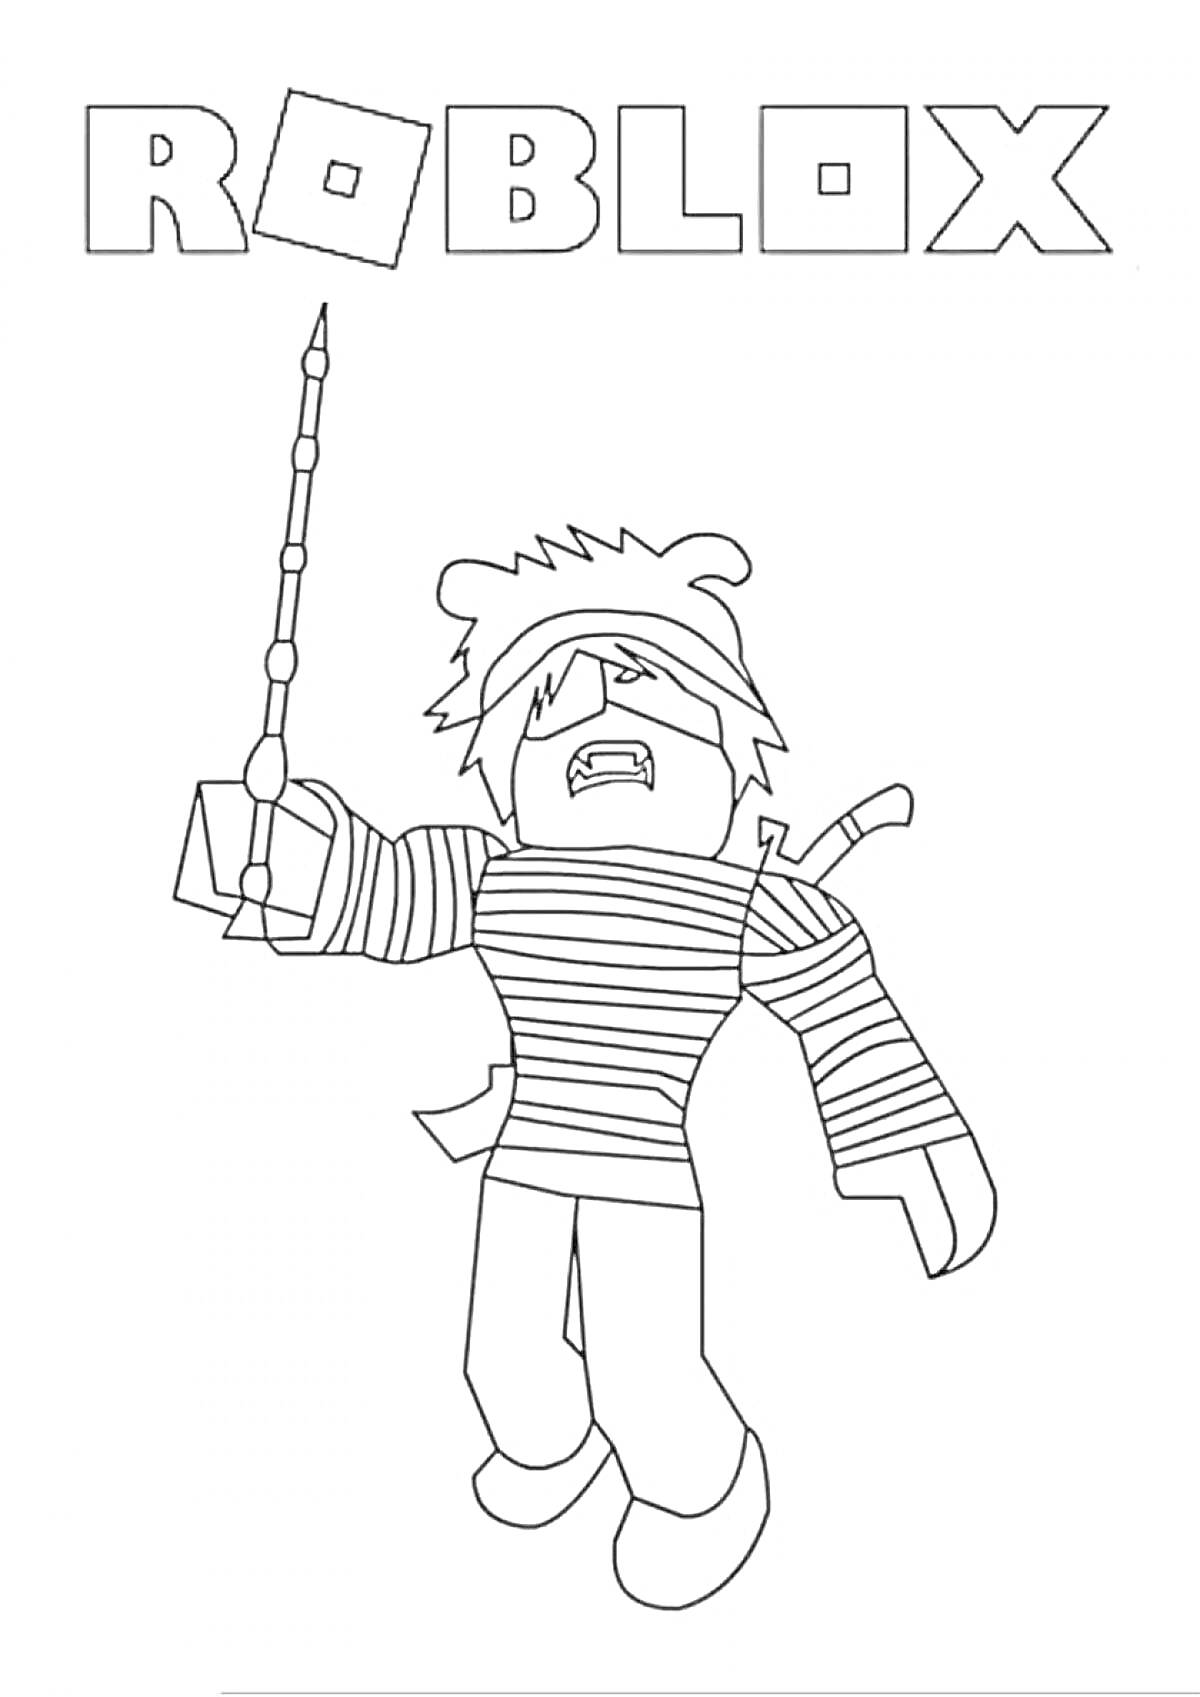 Раскраска Персонаж Роблокс с палкой, значком медведя на шляпе и мечами за спиной